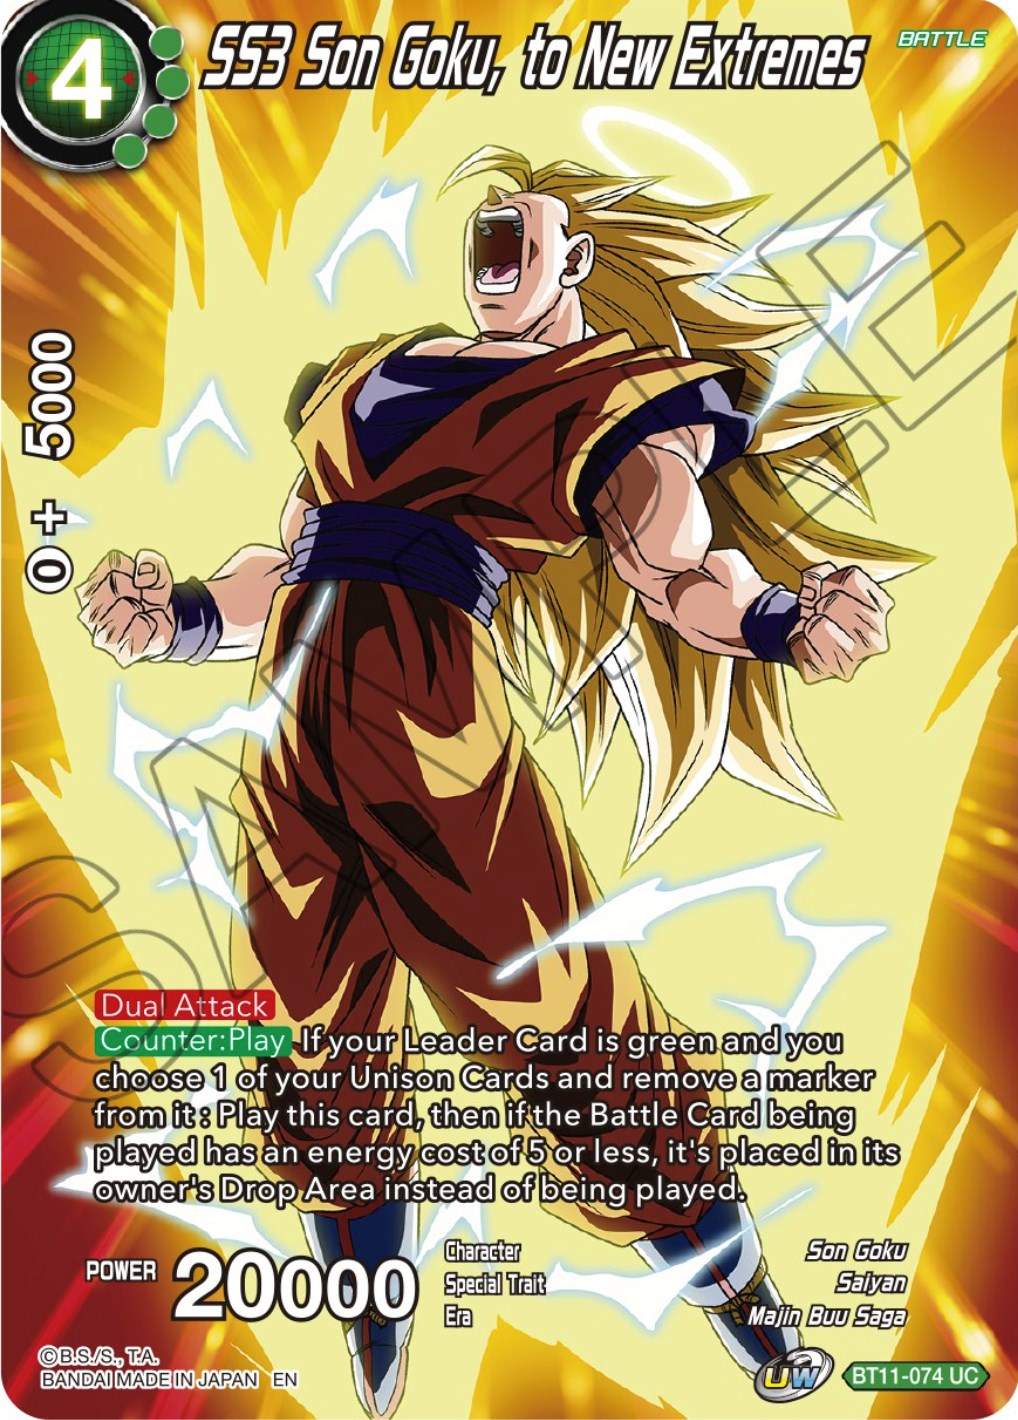 SS3 Son Goku, to New Extremes - Theme Selection: History of Son Goku ...